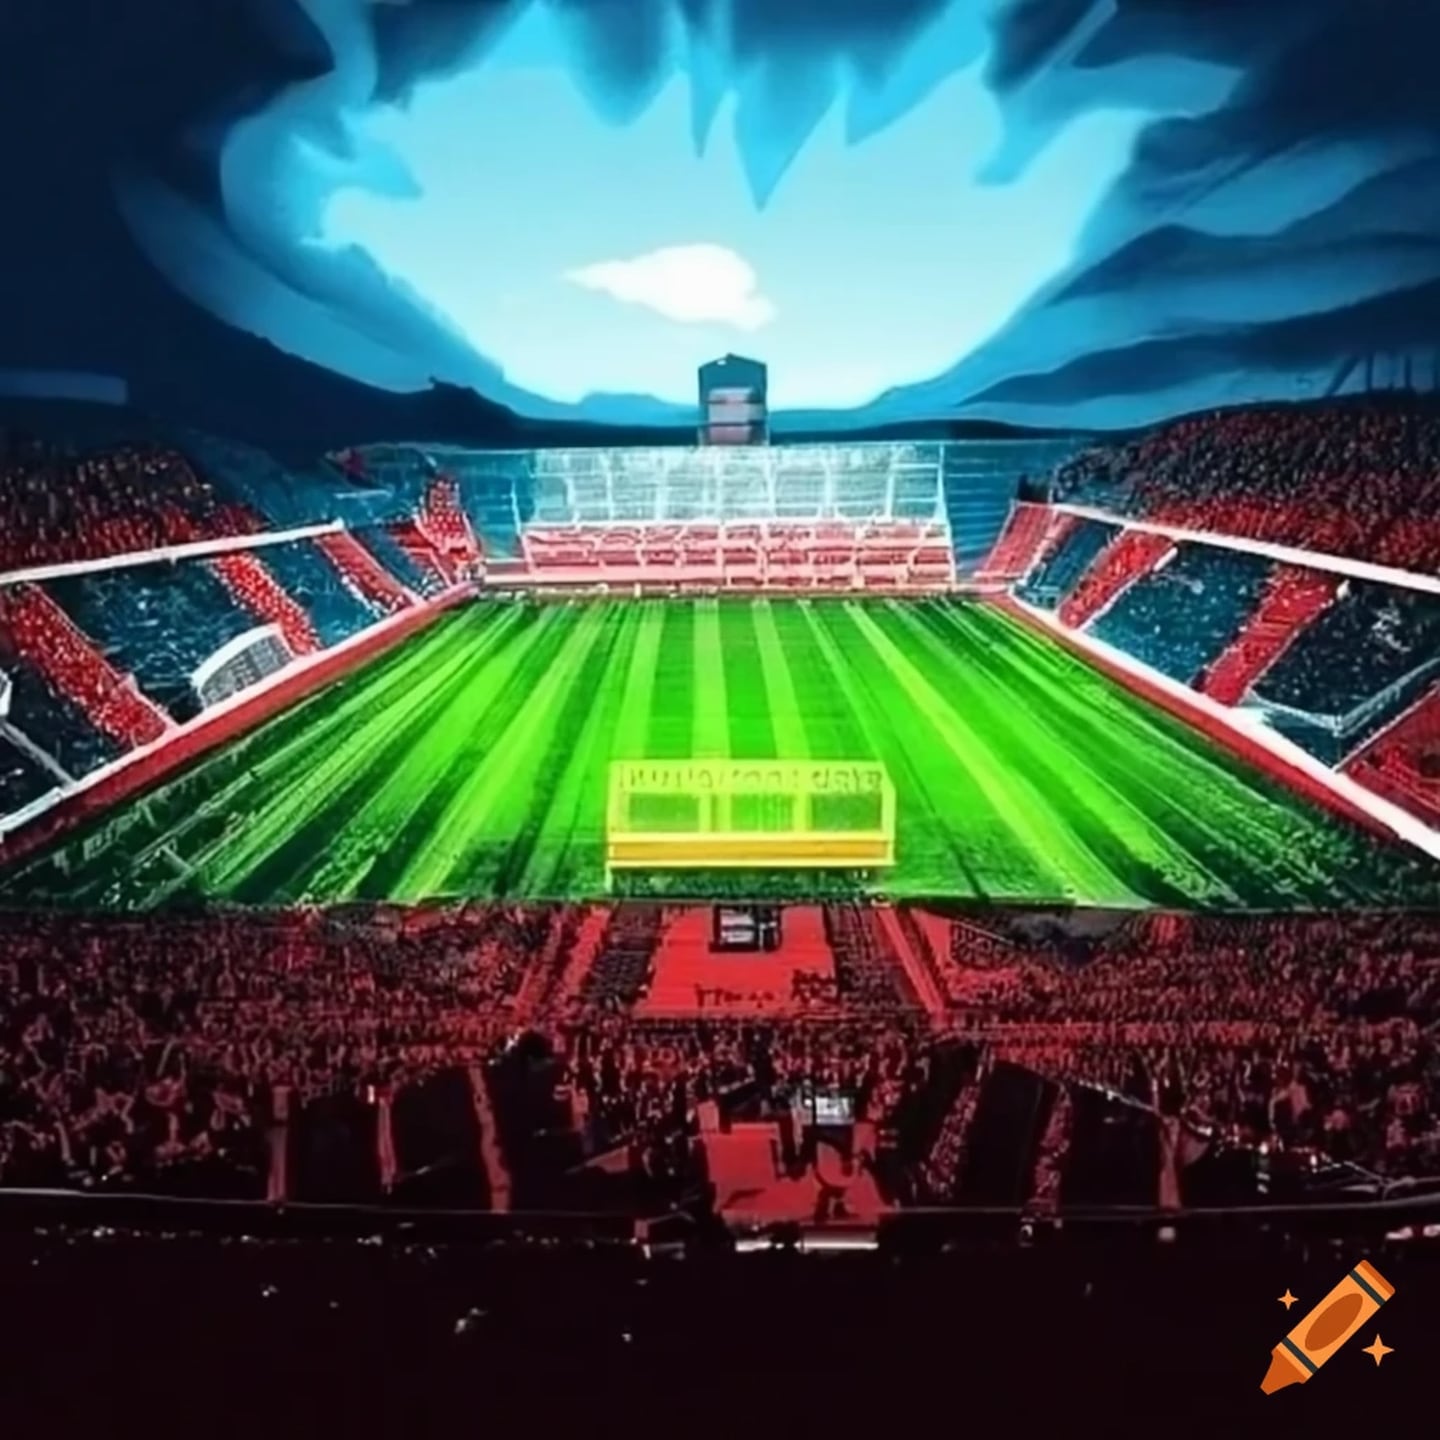 Estadio de Alajuelense en el año 2073 según Craiyon | El Financiero